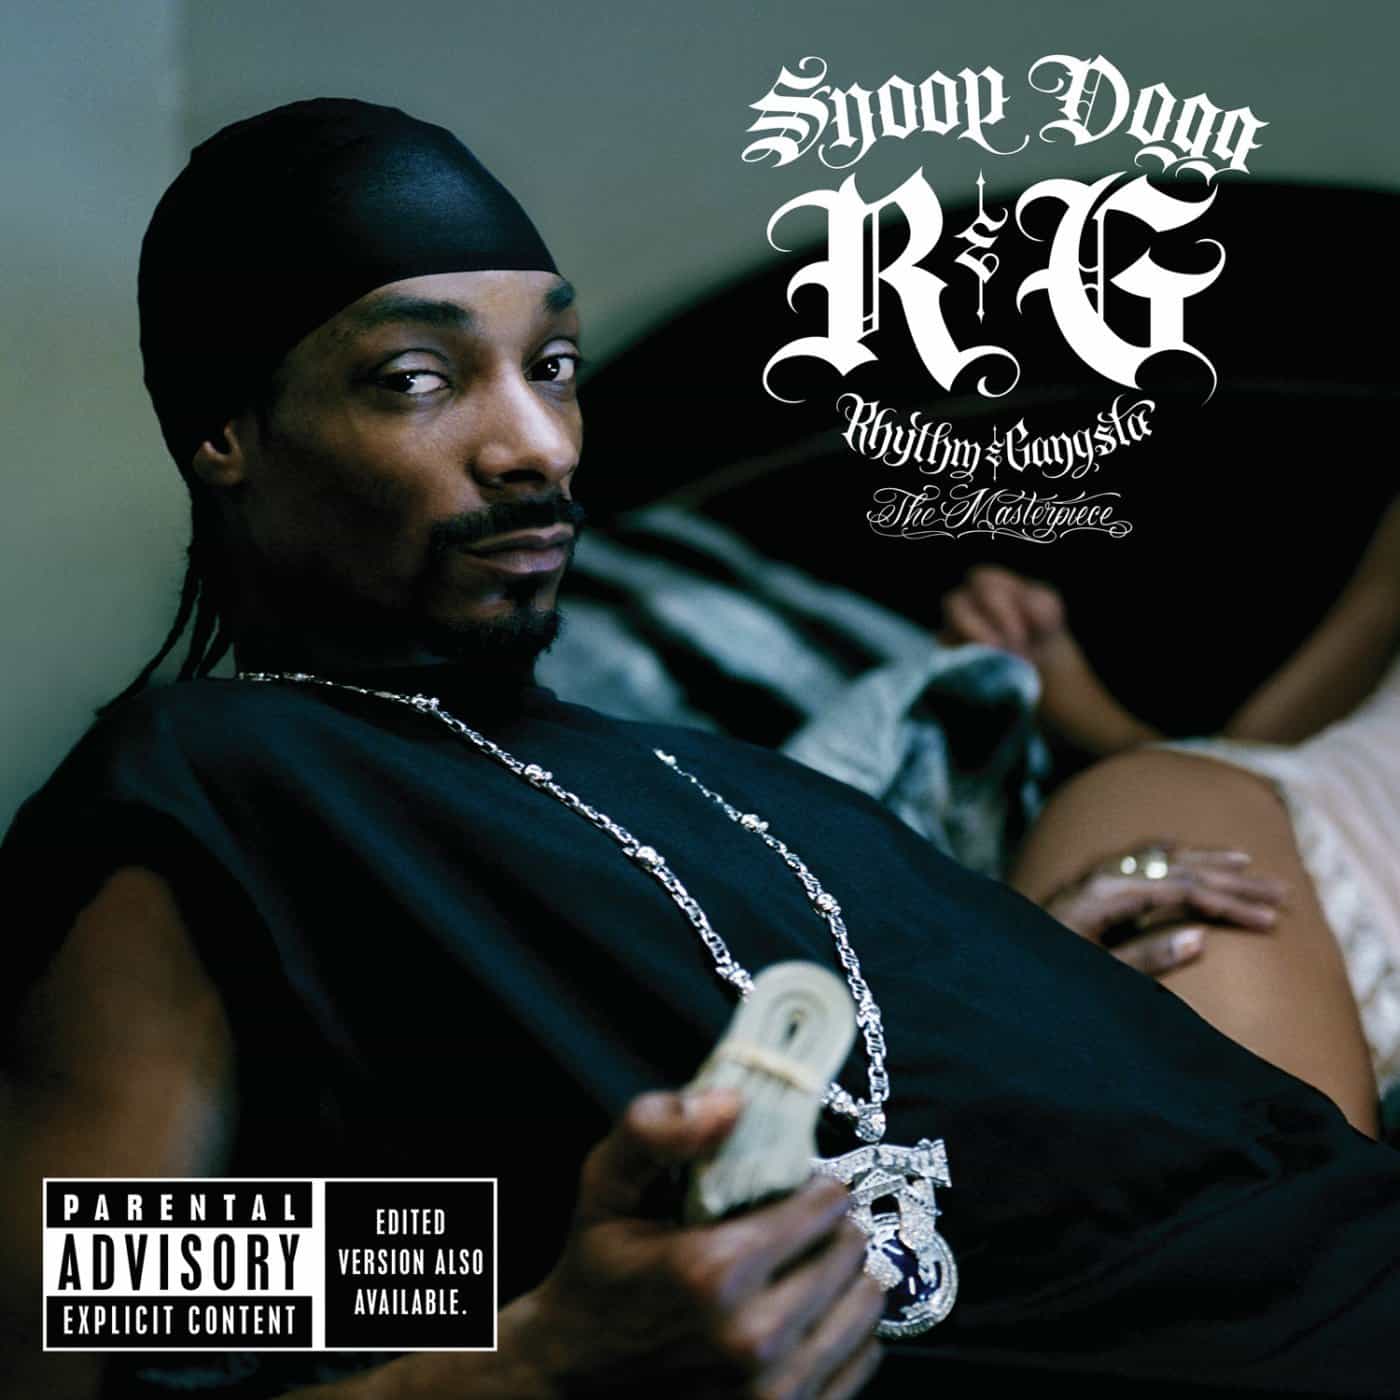 SNOOP DOGG - R&G (RHYTHM & GANGSTA): THE MASTERPIECE